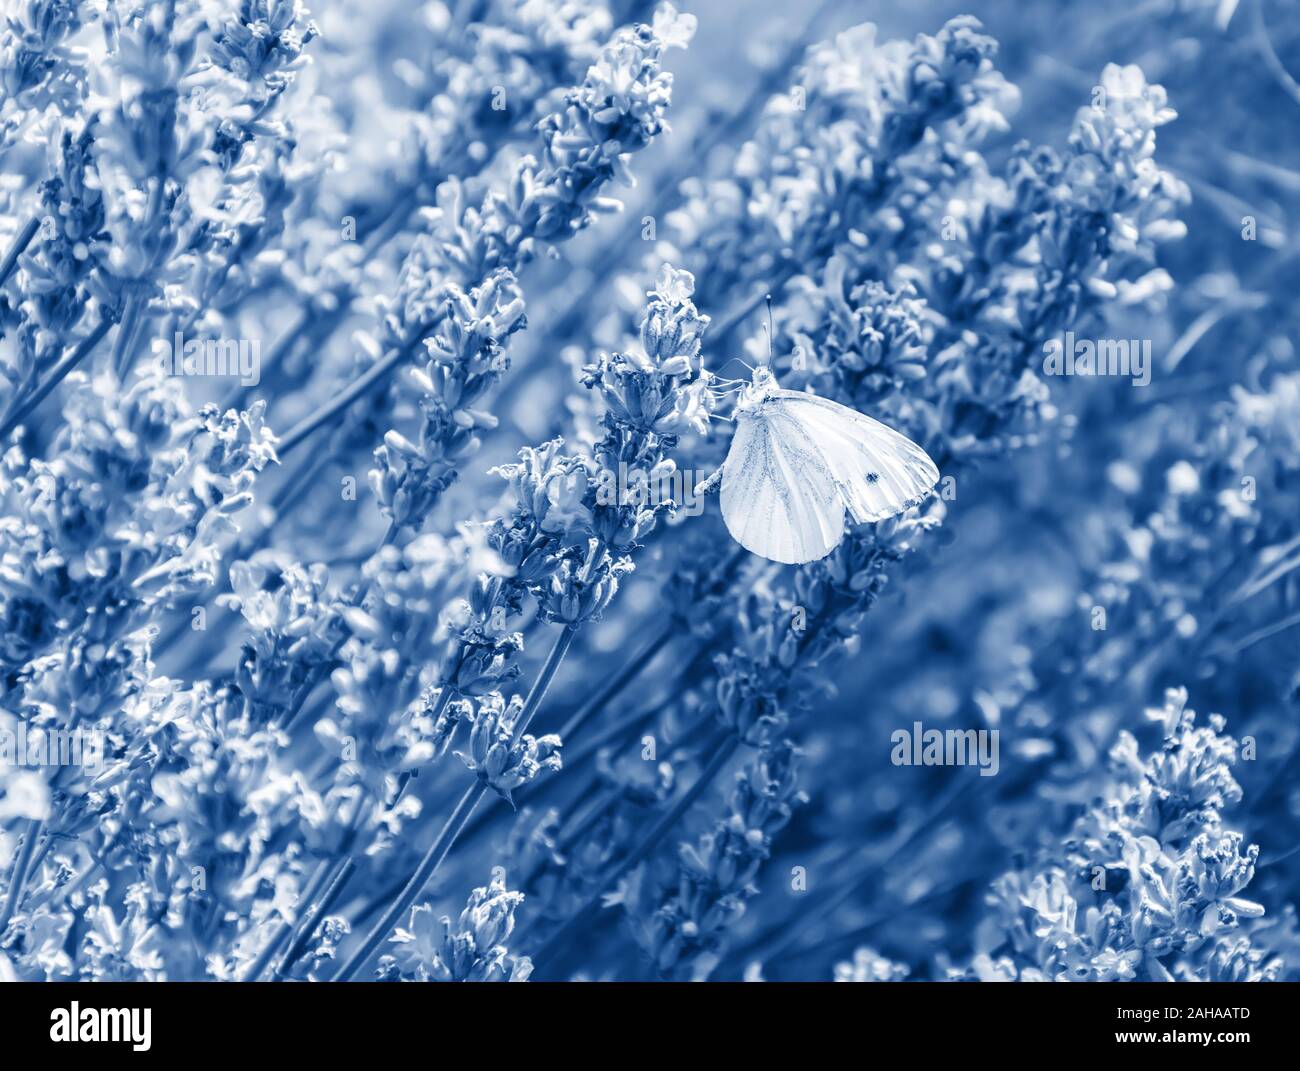 Weiß Schmetterling am Lavendel Blume getönten in trendigen Classic Blau - die Farbe des Jahres 2020. Lavendelfeld mit duftenden Blumen in voller Blüte. Natur Blumen Stockfoto